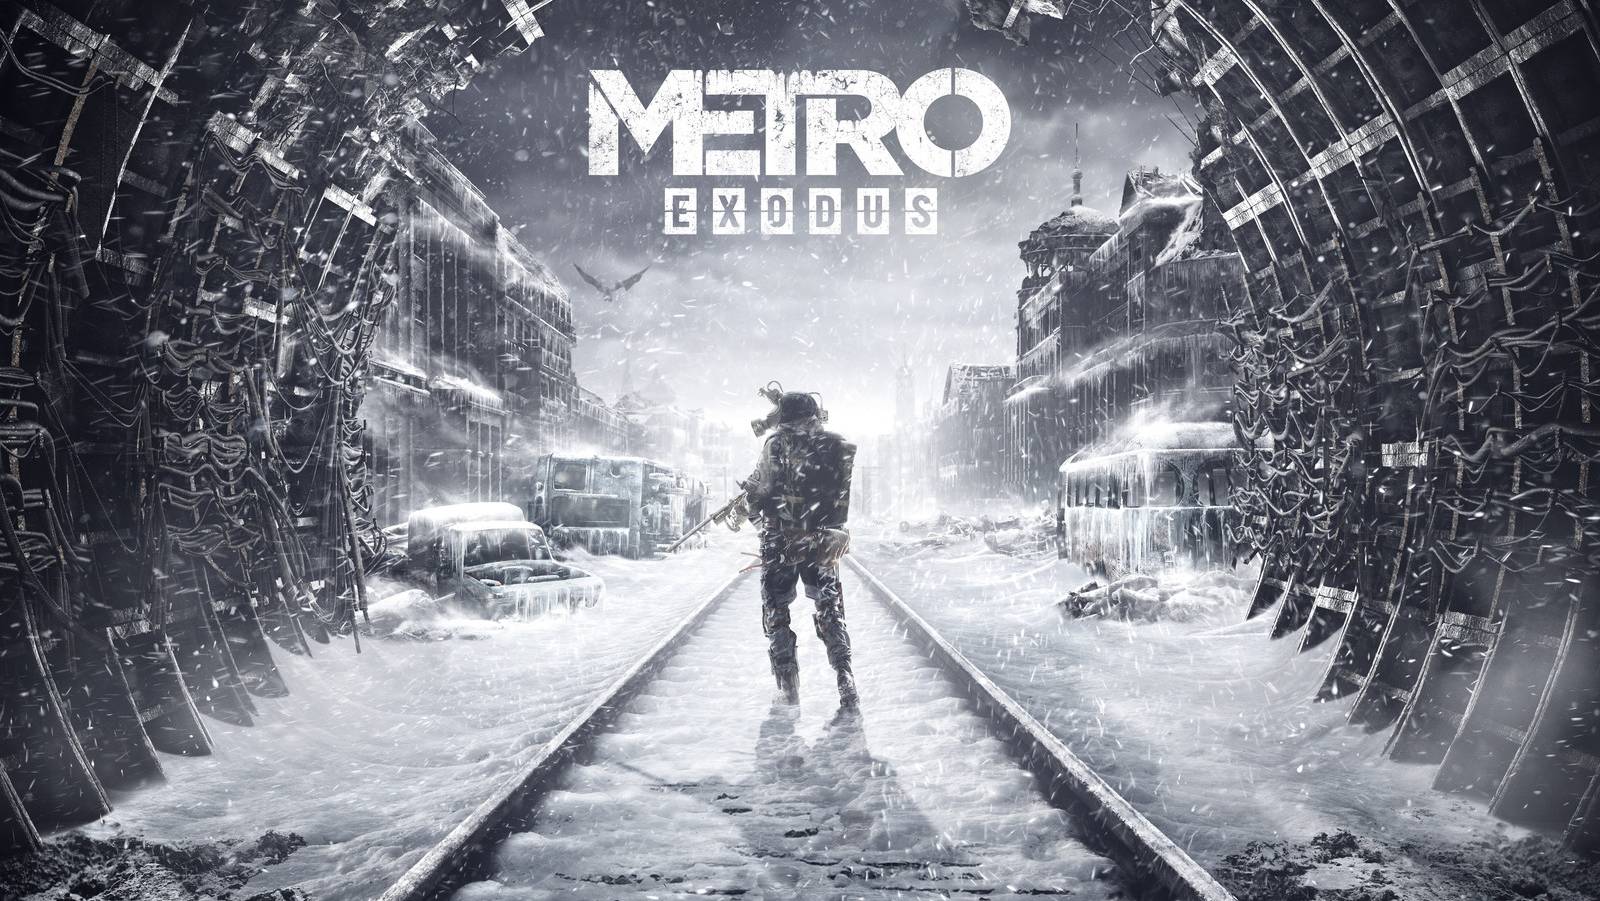 Стрим|Metro Exodus| Прохождение |Часть 8|?Ready to Game?